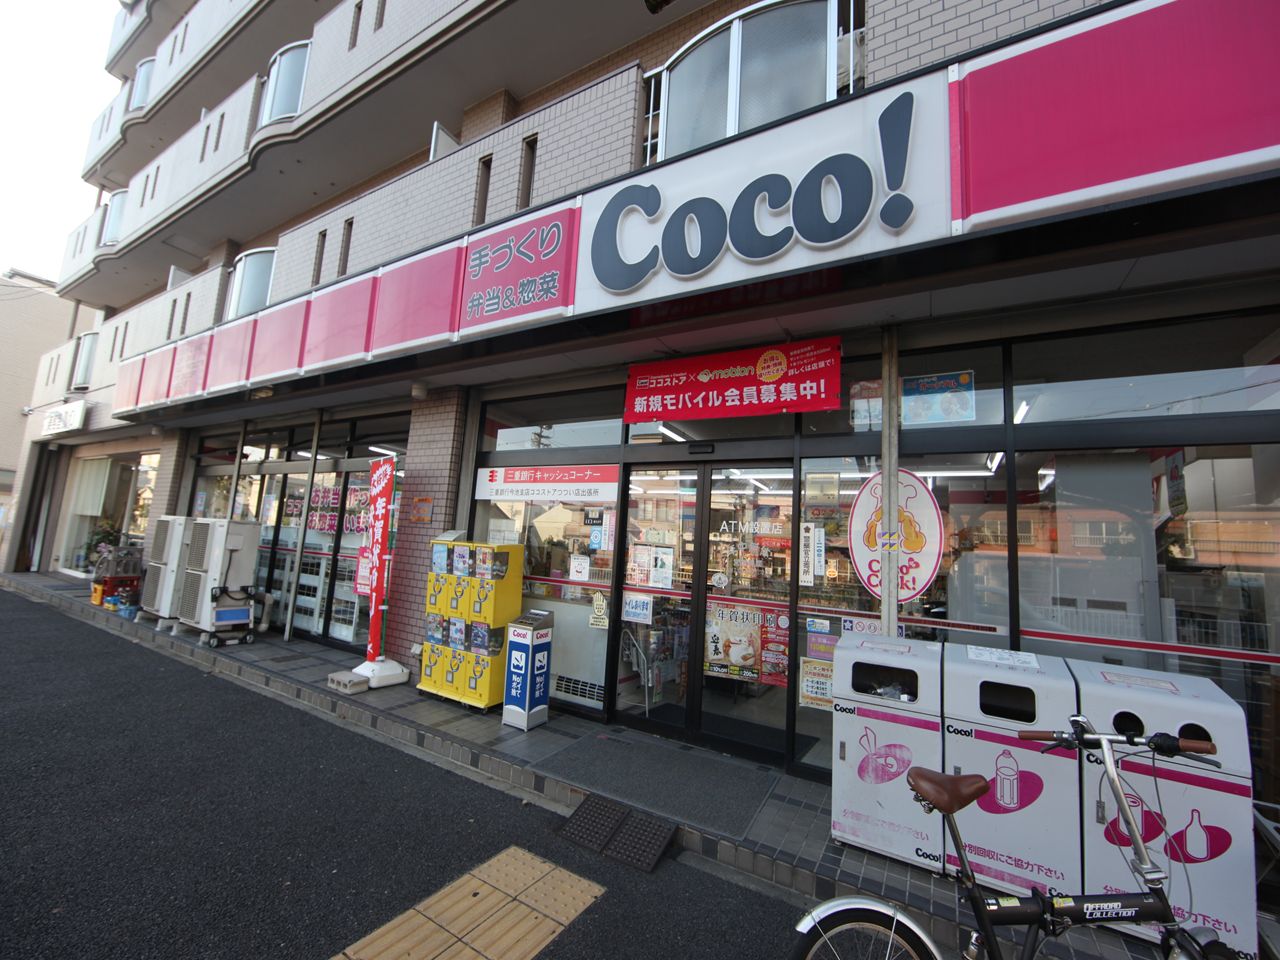 Convenience store. 359m to the Coco store Tsutsui store (convenience store)